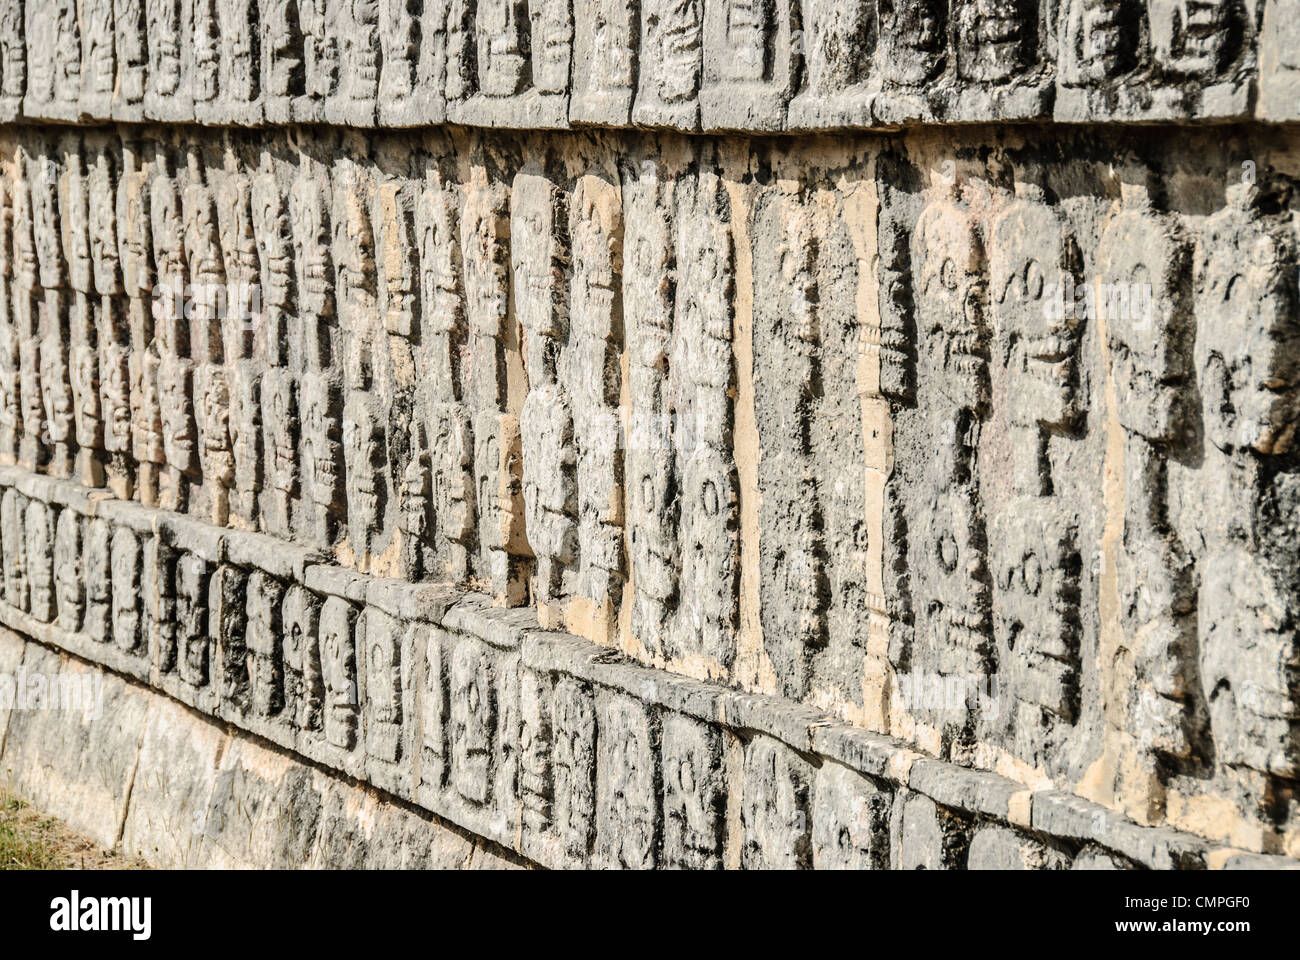 CHICHEN ITZA, Mexique - l'inscription de crânes sculptés dans un mur de pierre à Chichen Itza, au Mexique. Banque D'Images